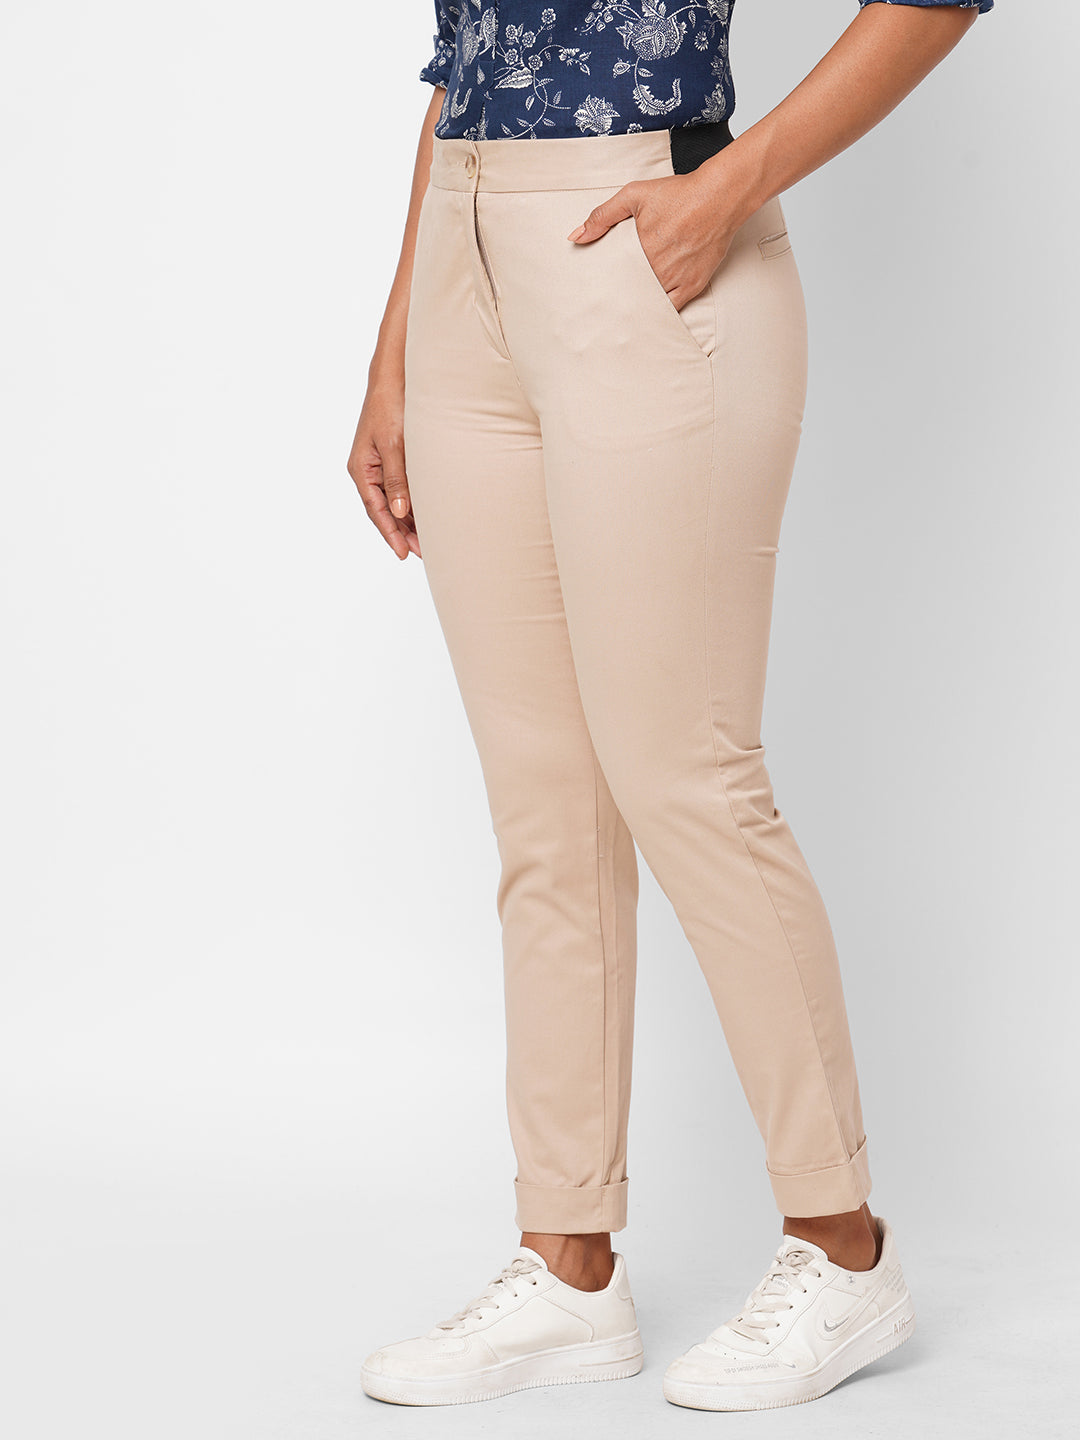 Women's Beige Cotton Lycra Slim Fit Pant